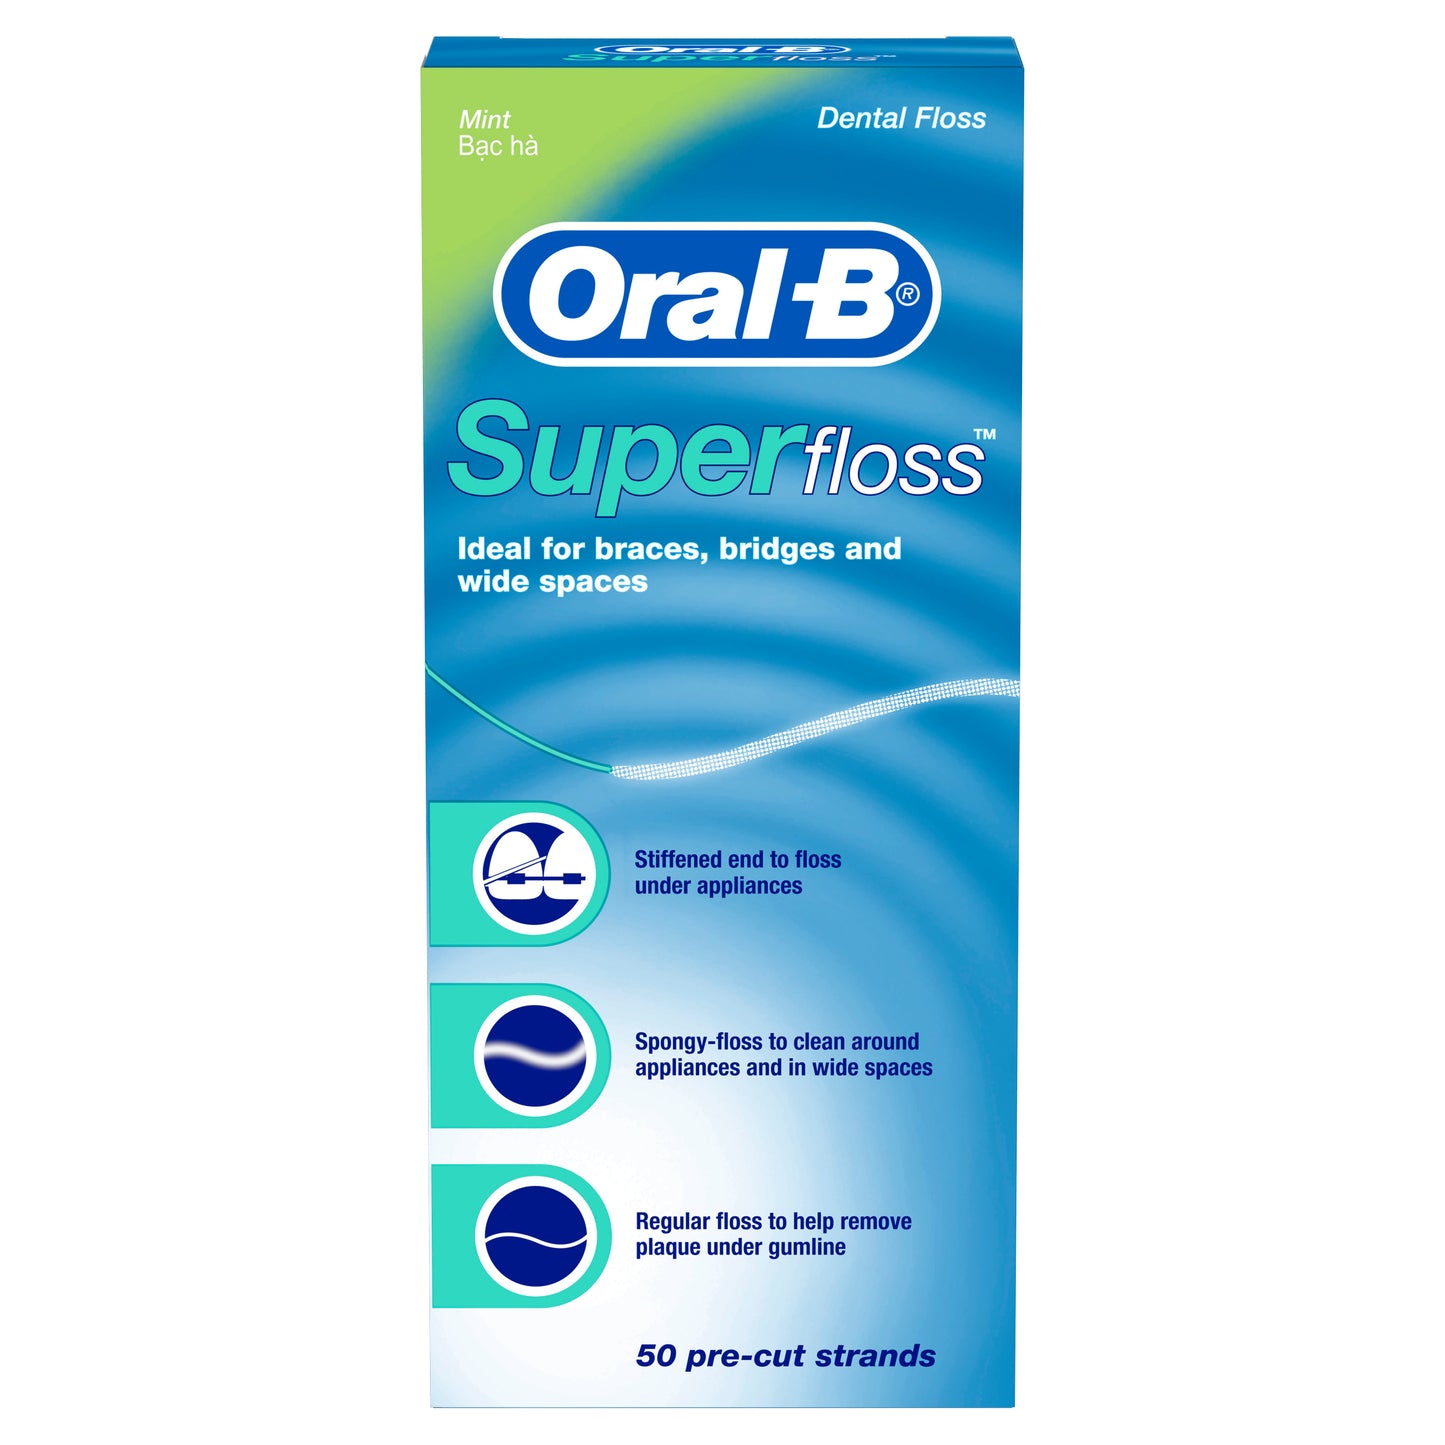 Oral-B Super Floss 50 Pre-Cut Strands Mint flavor